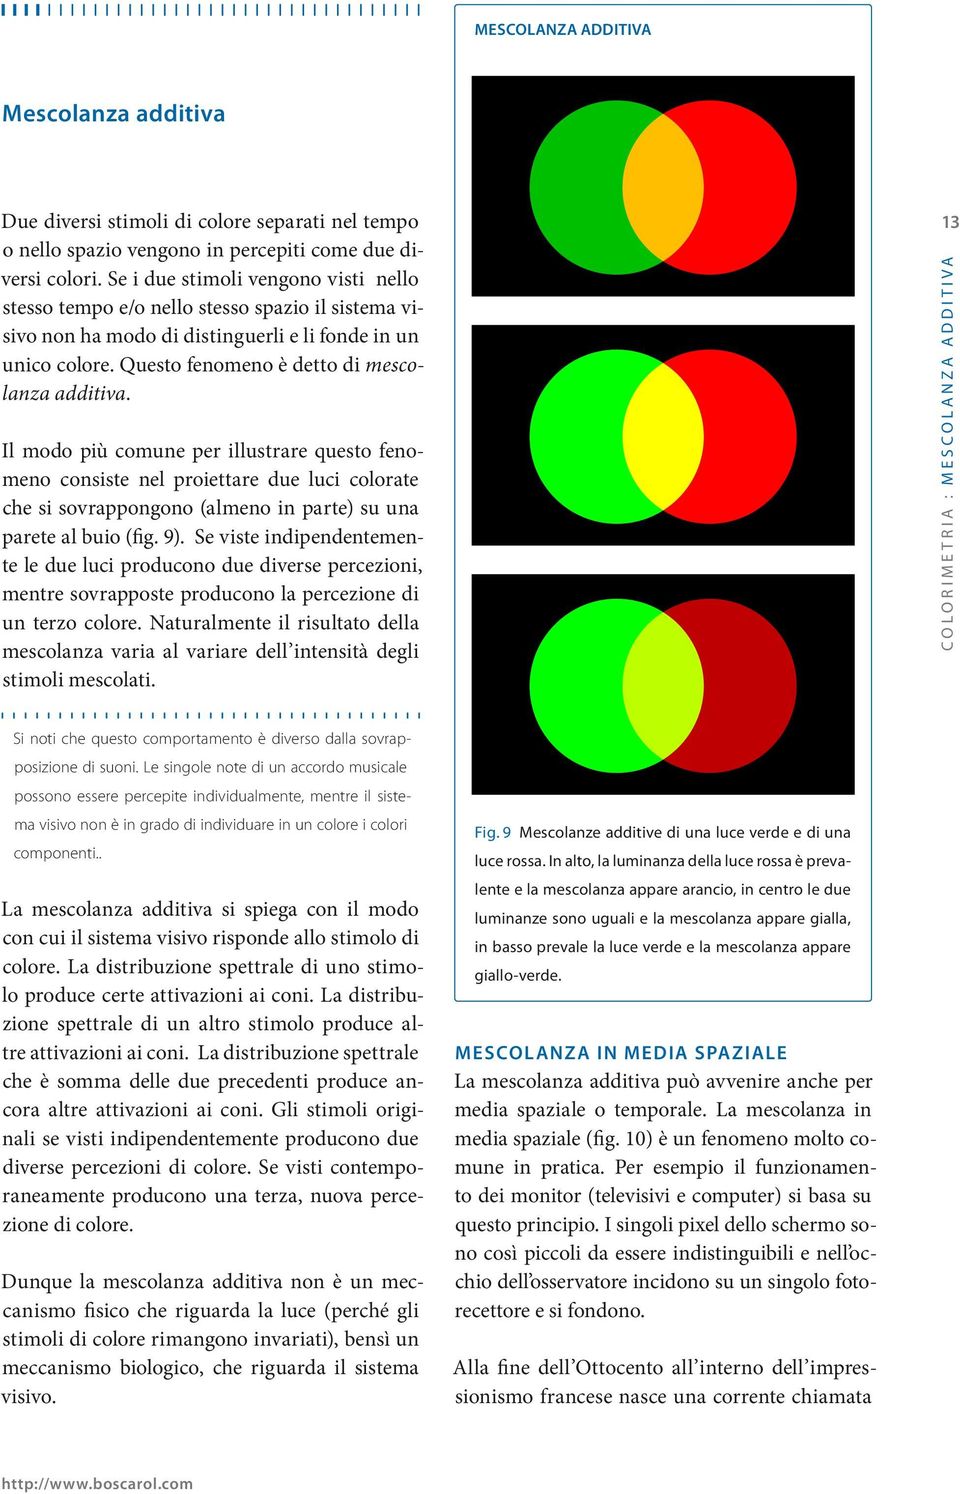 Il modo più comune per illustrare questo fenomeno consiste nel proiettare due luci colorate che si sovrappongono (almeno in parte) su una parete al buio (fig. 9).